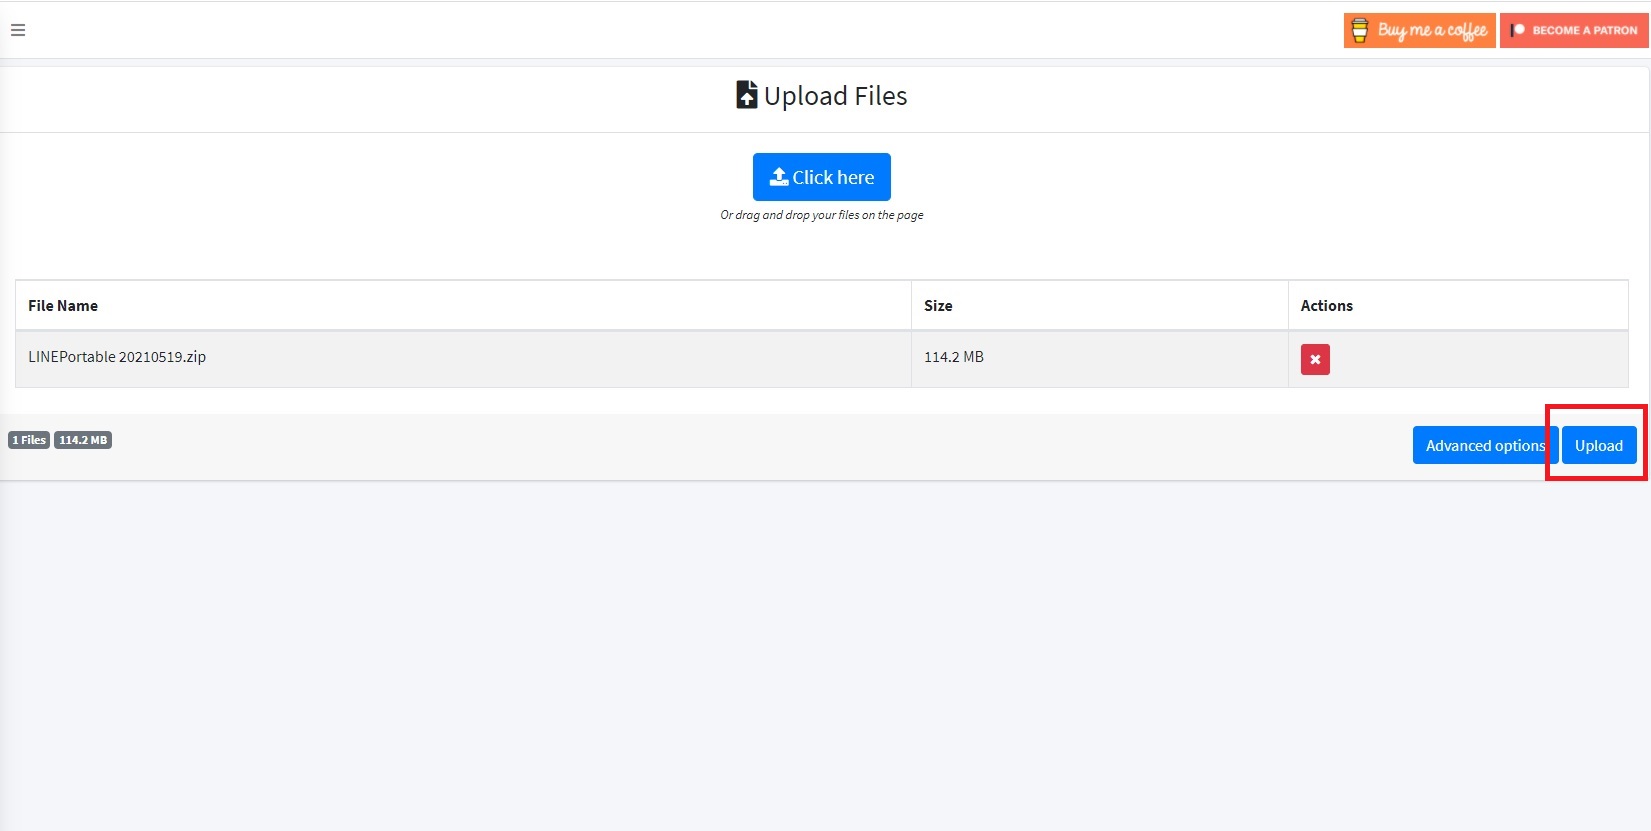 免費檔案空間 Gofile 免費文件共享平台